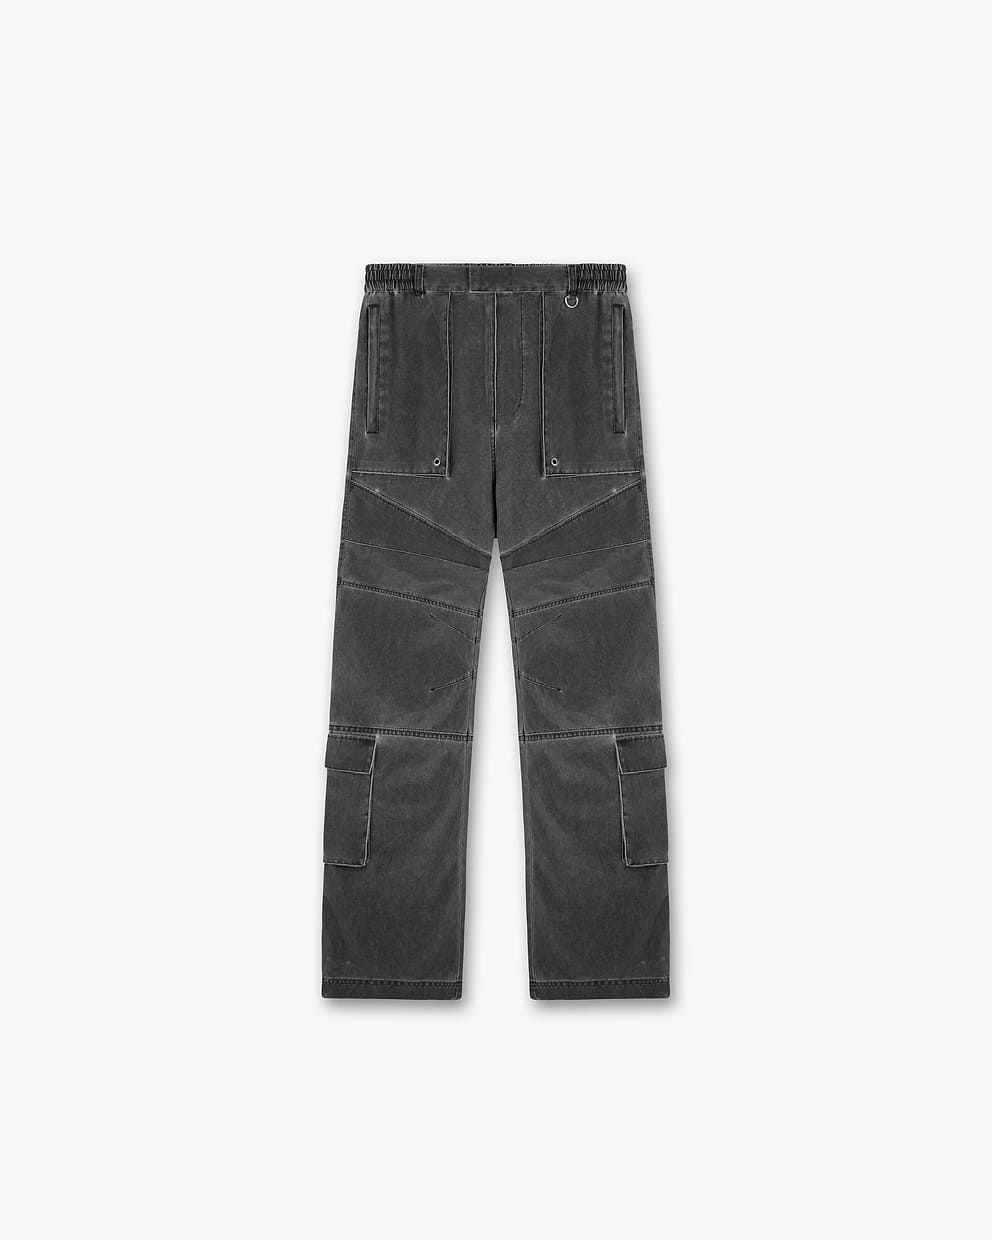 8 Pocket Cargo Pant - Washed Black